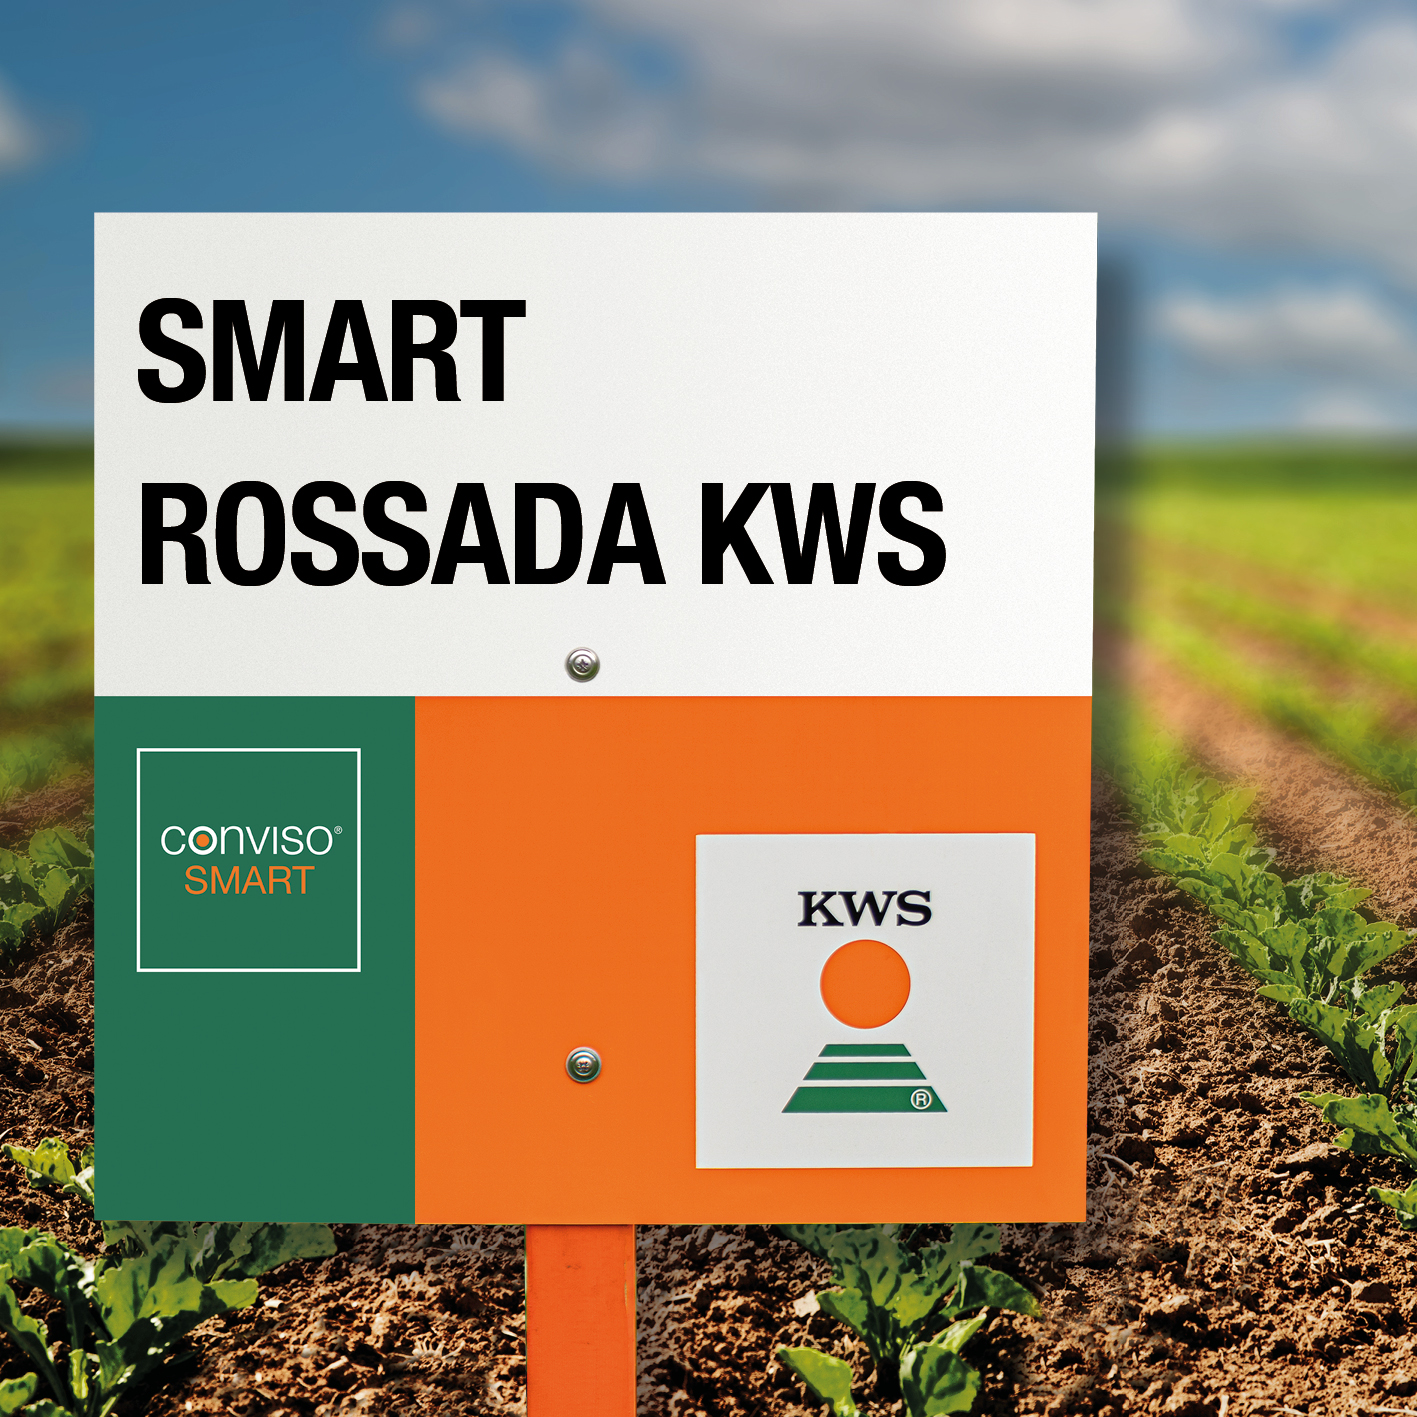 HR-SMART-ROSSADA-KWS.jpg